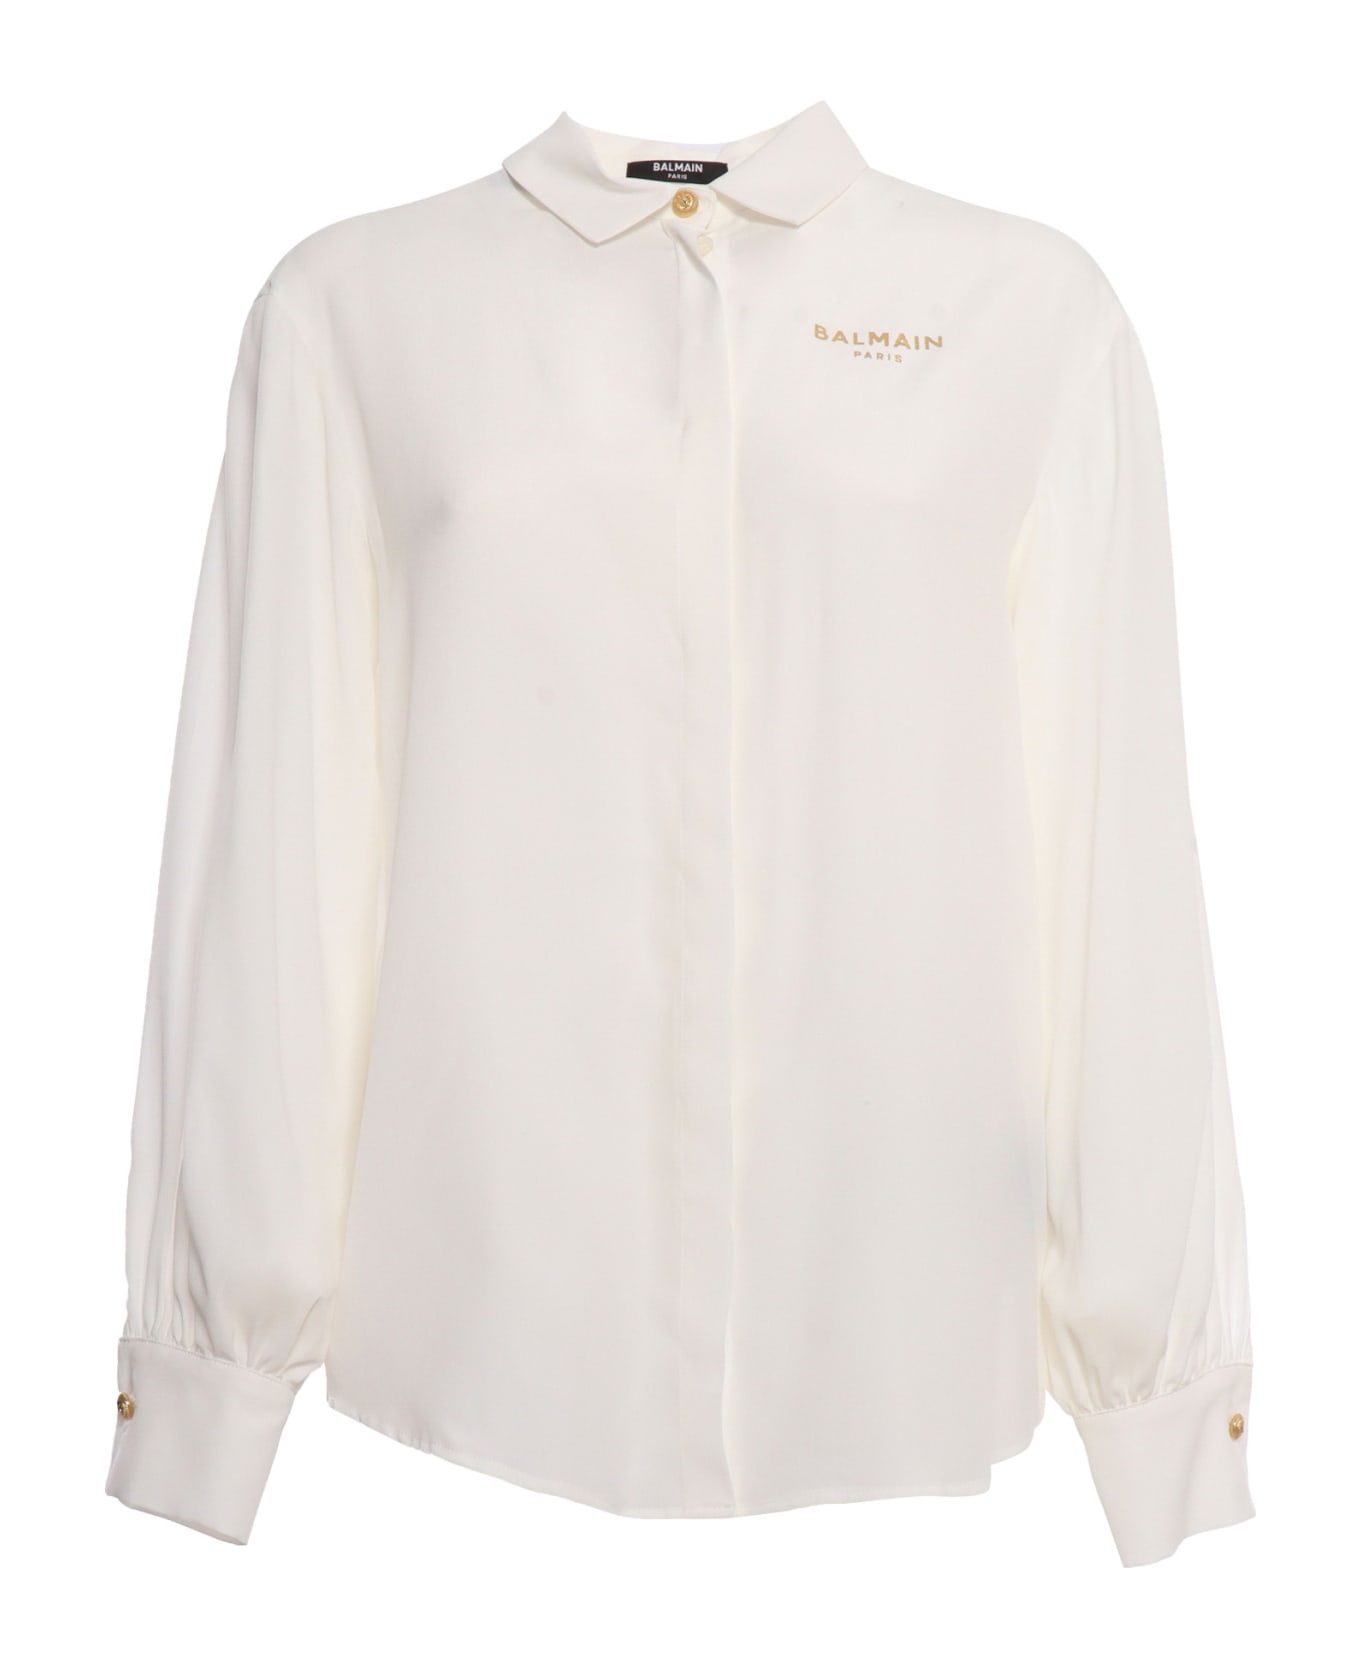 Balmain White Shirt With Logo - WHITE